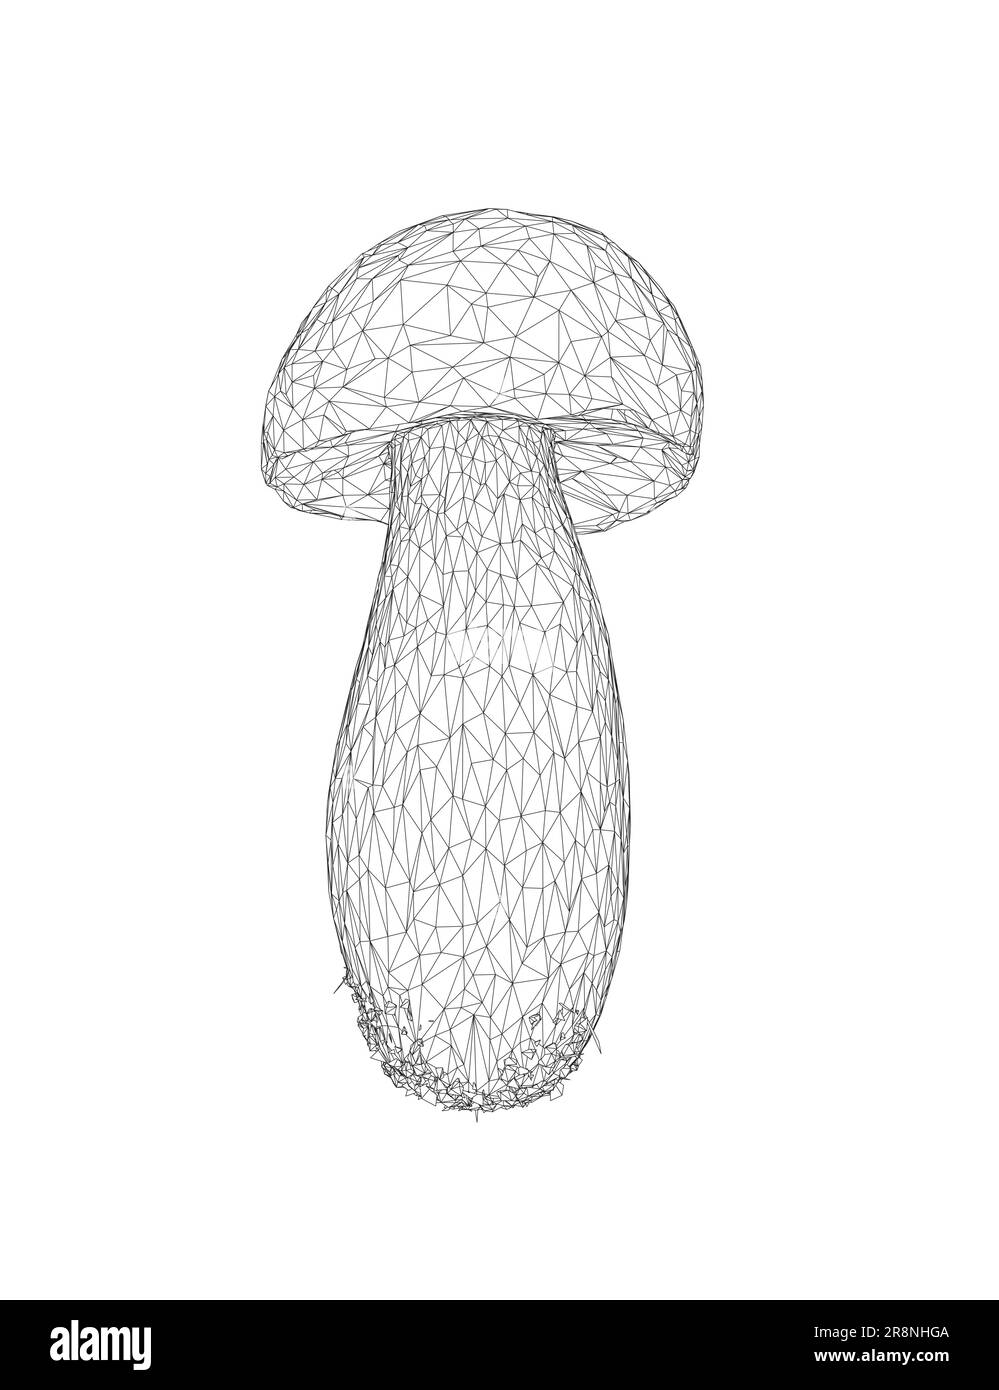 Drahtmodell Champignon Pilze Vektorzeichnung, Krötenhocker, Fliegenhocker, weißer Krötenhocker, Drahtmodell-Pilze isoliert auf weißem Hintergrund. Stock Vektor